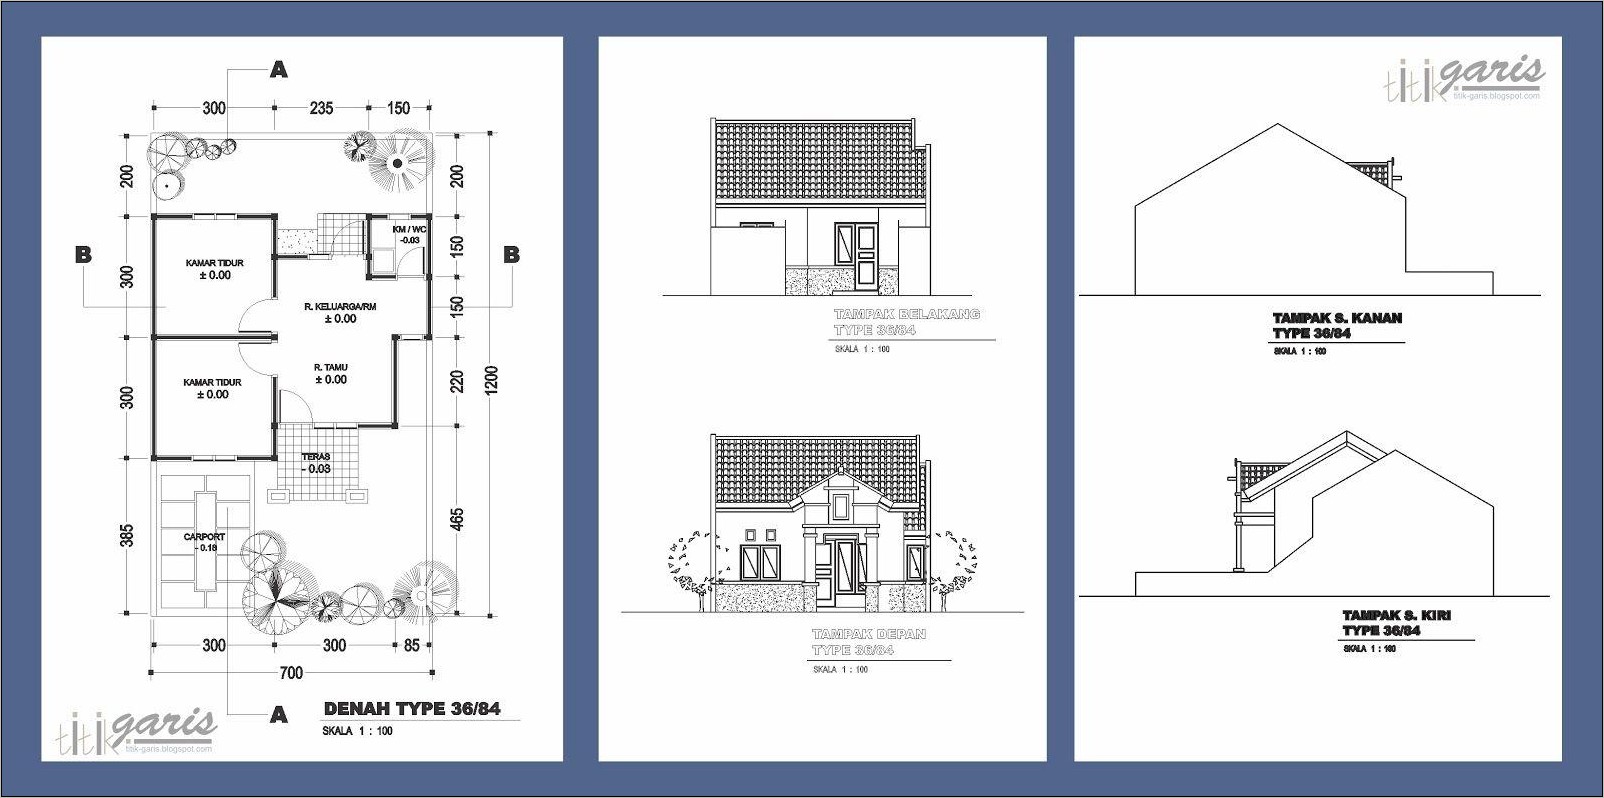 Denah Tampak Potongan Rumah 1 Lantai - Gambar Design Rumah - Denah Tampak Potongan Rumah Type 36